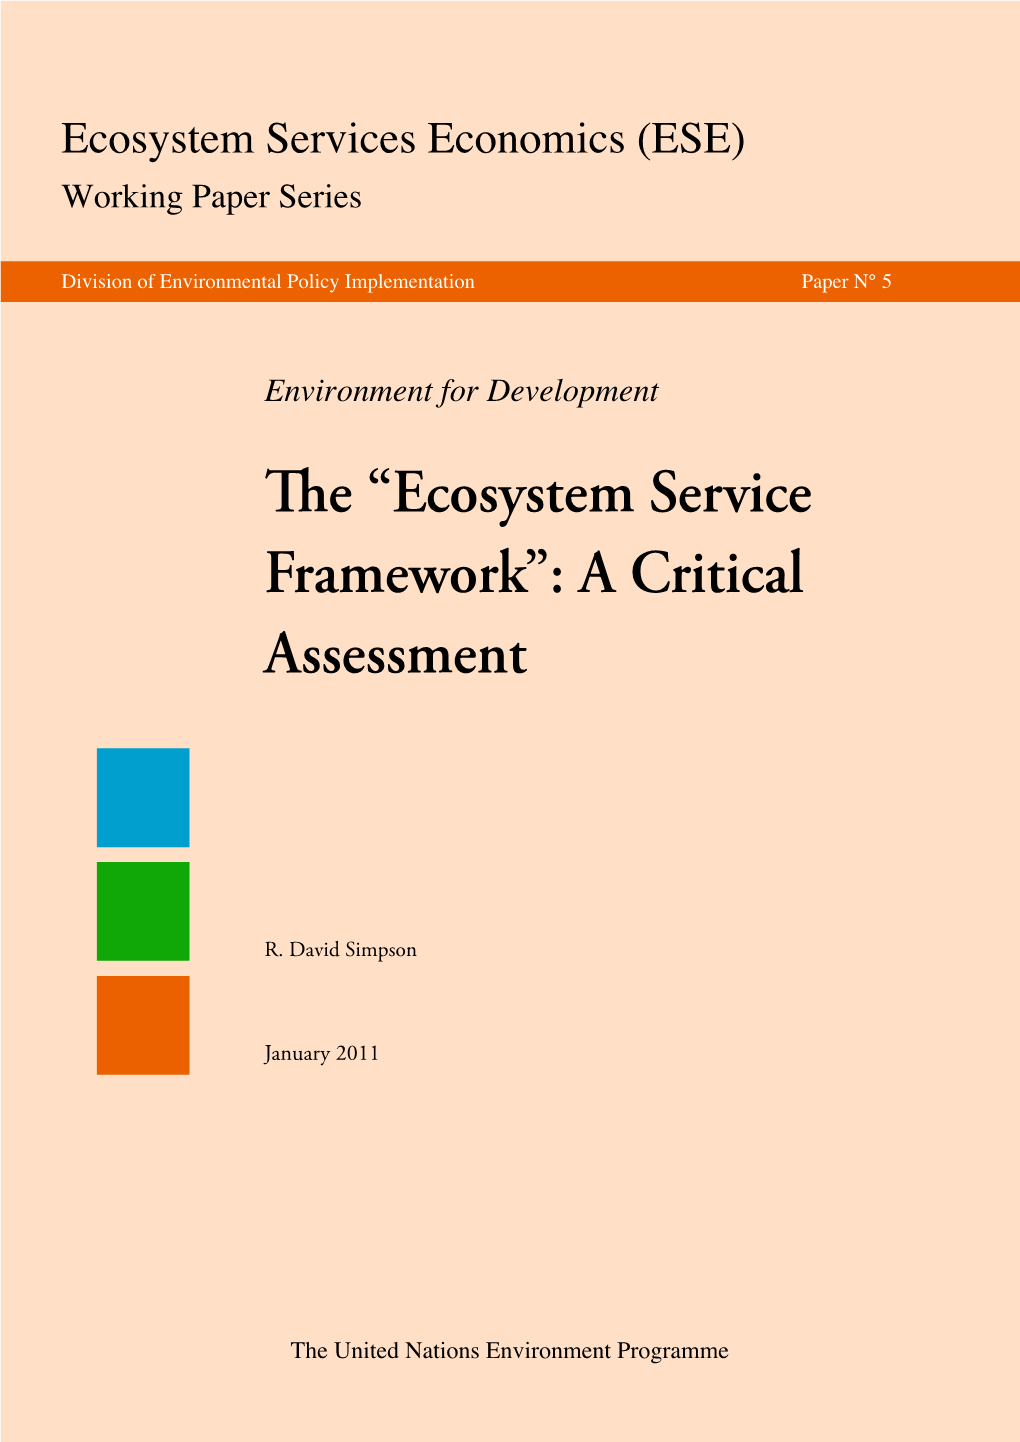 Ecosystem Service Framework”: a Critical Assessment